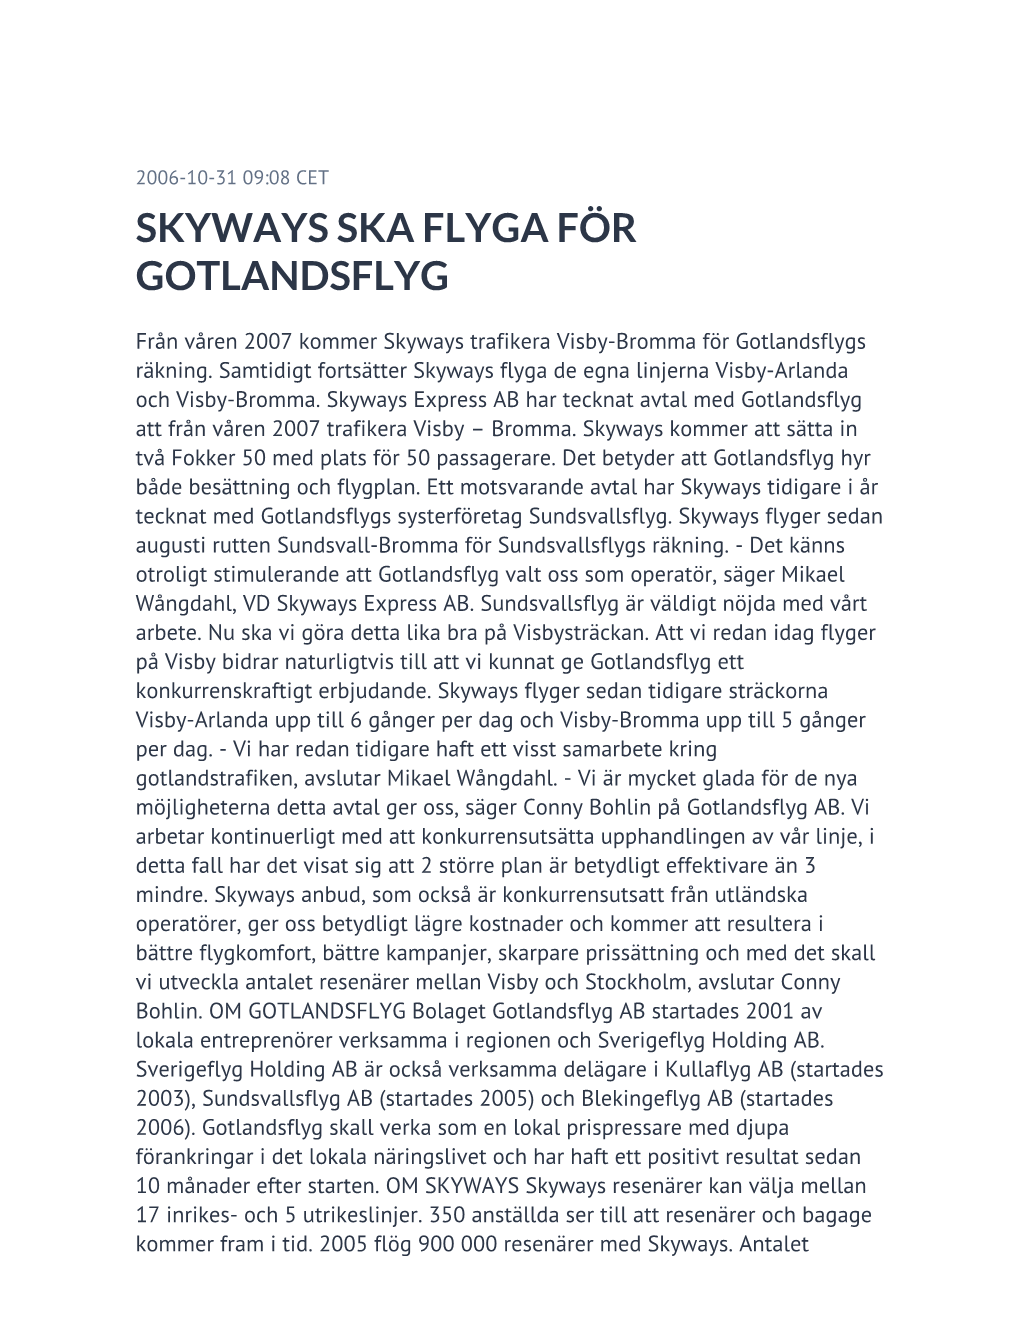 Skyways Ska Flyga För Gotlandsflyg